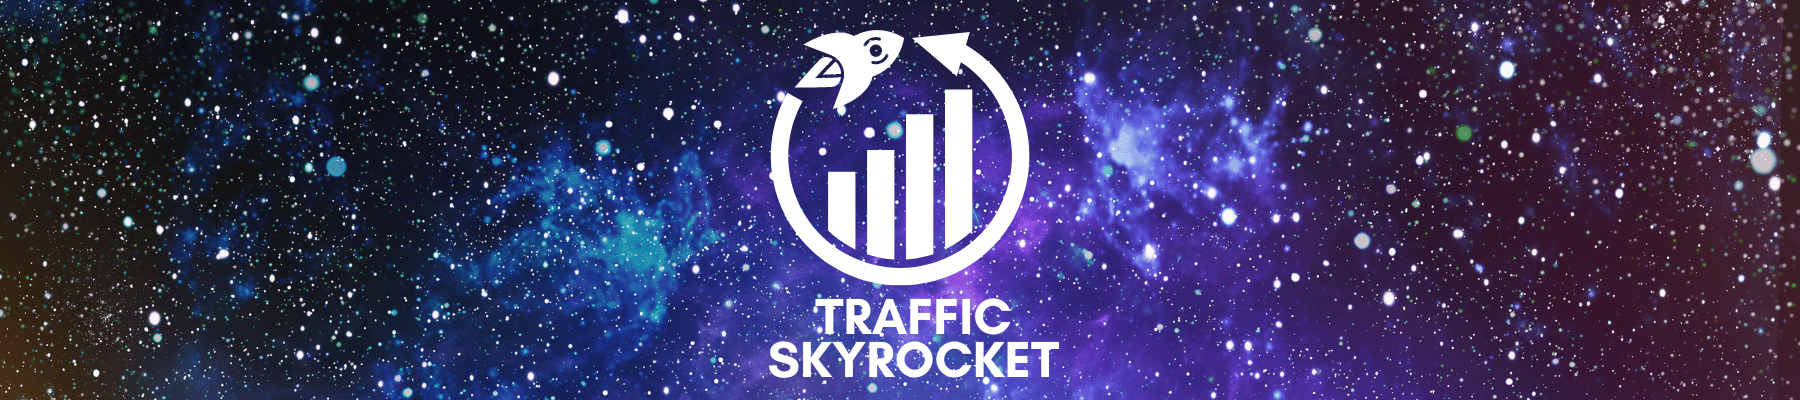 Traffic Skyrocket